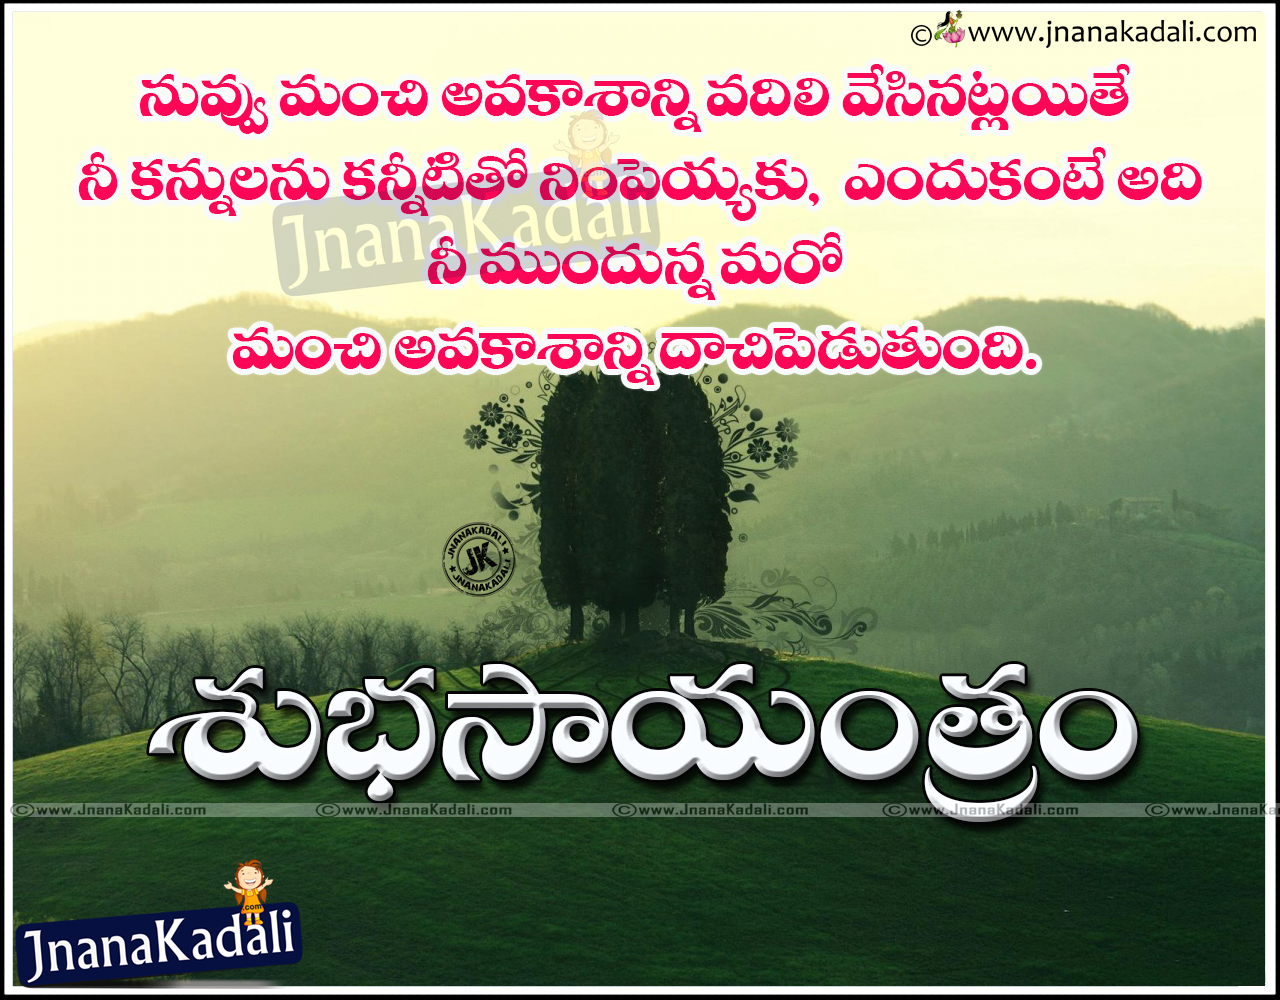 Telugu Goal Setting Quotes and Good Evening Wishes | JNANA KADALI ...